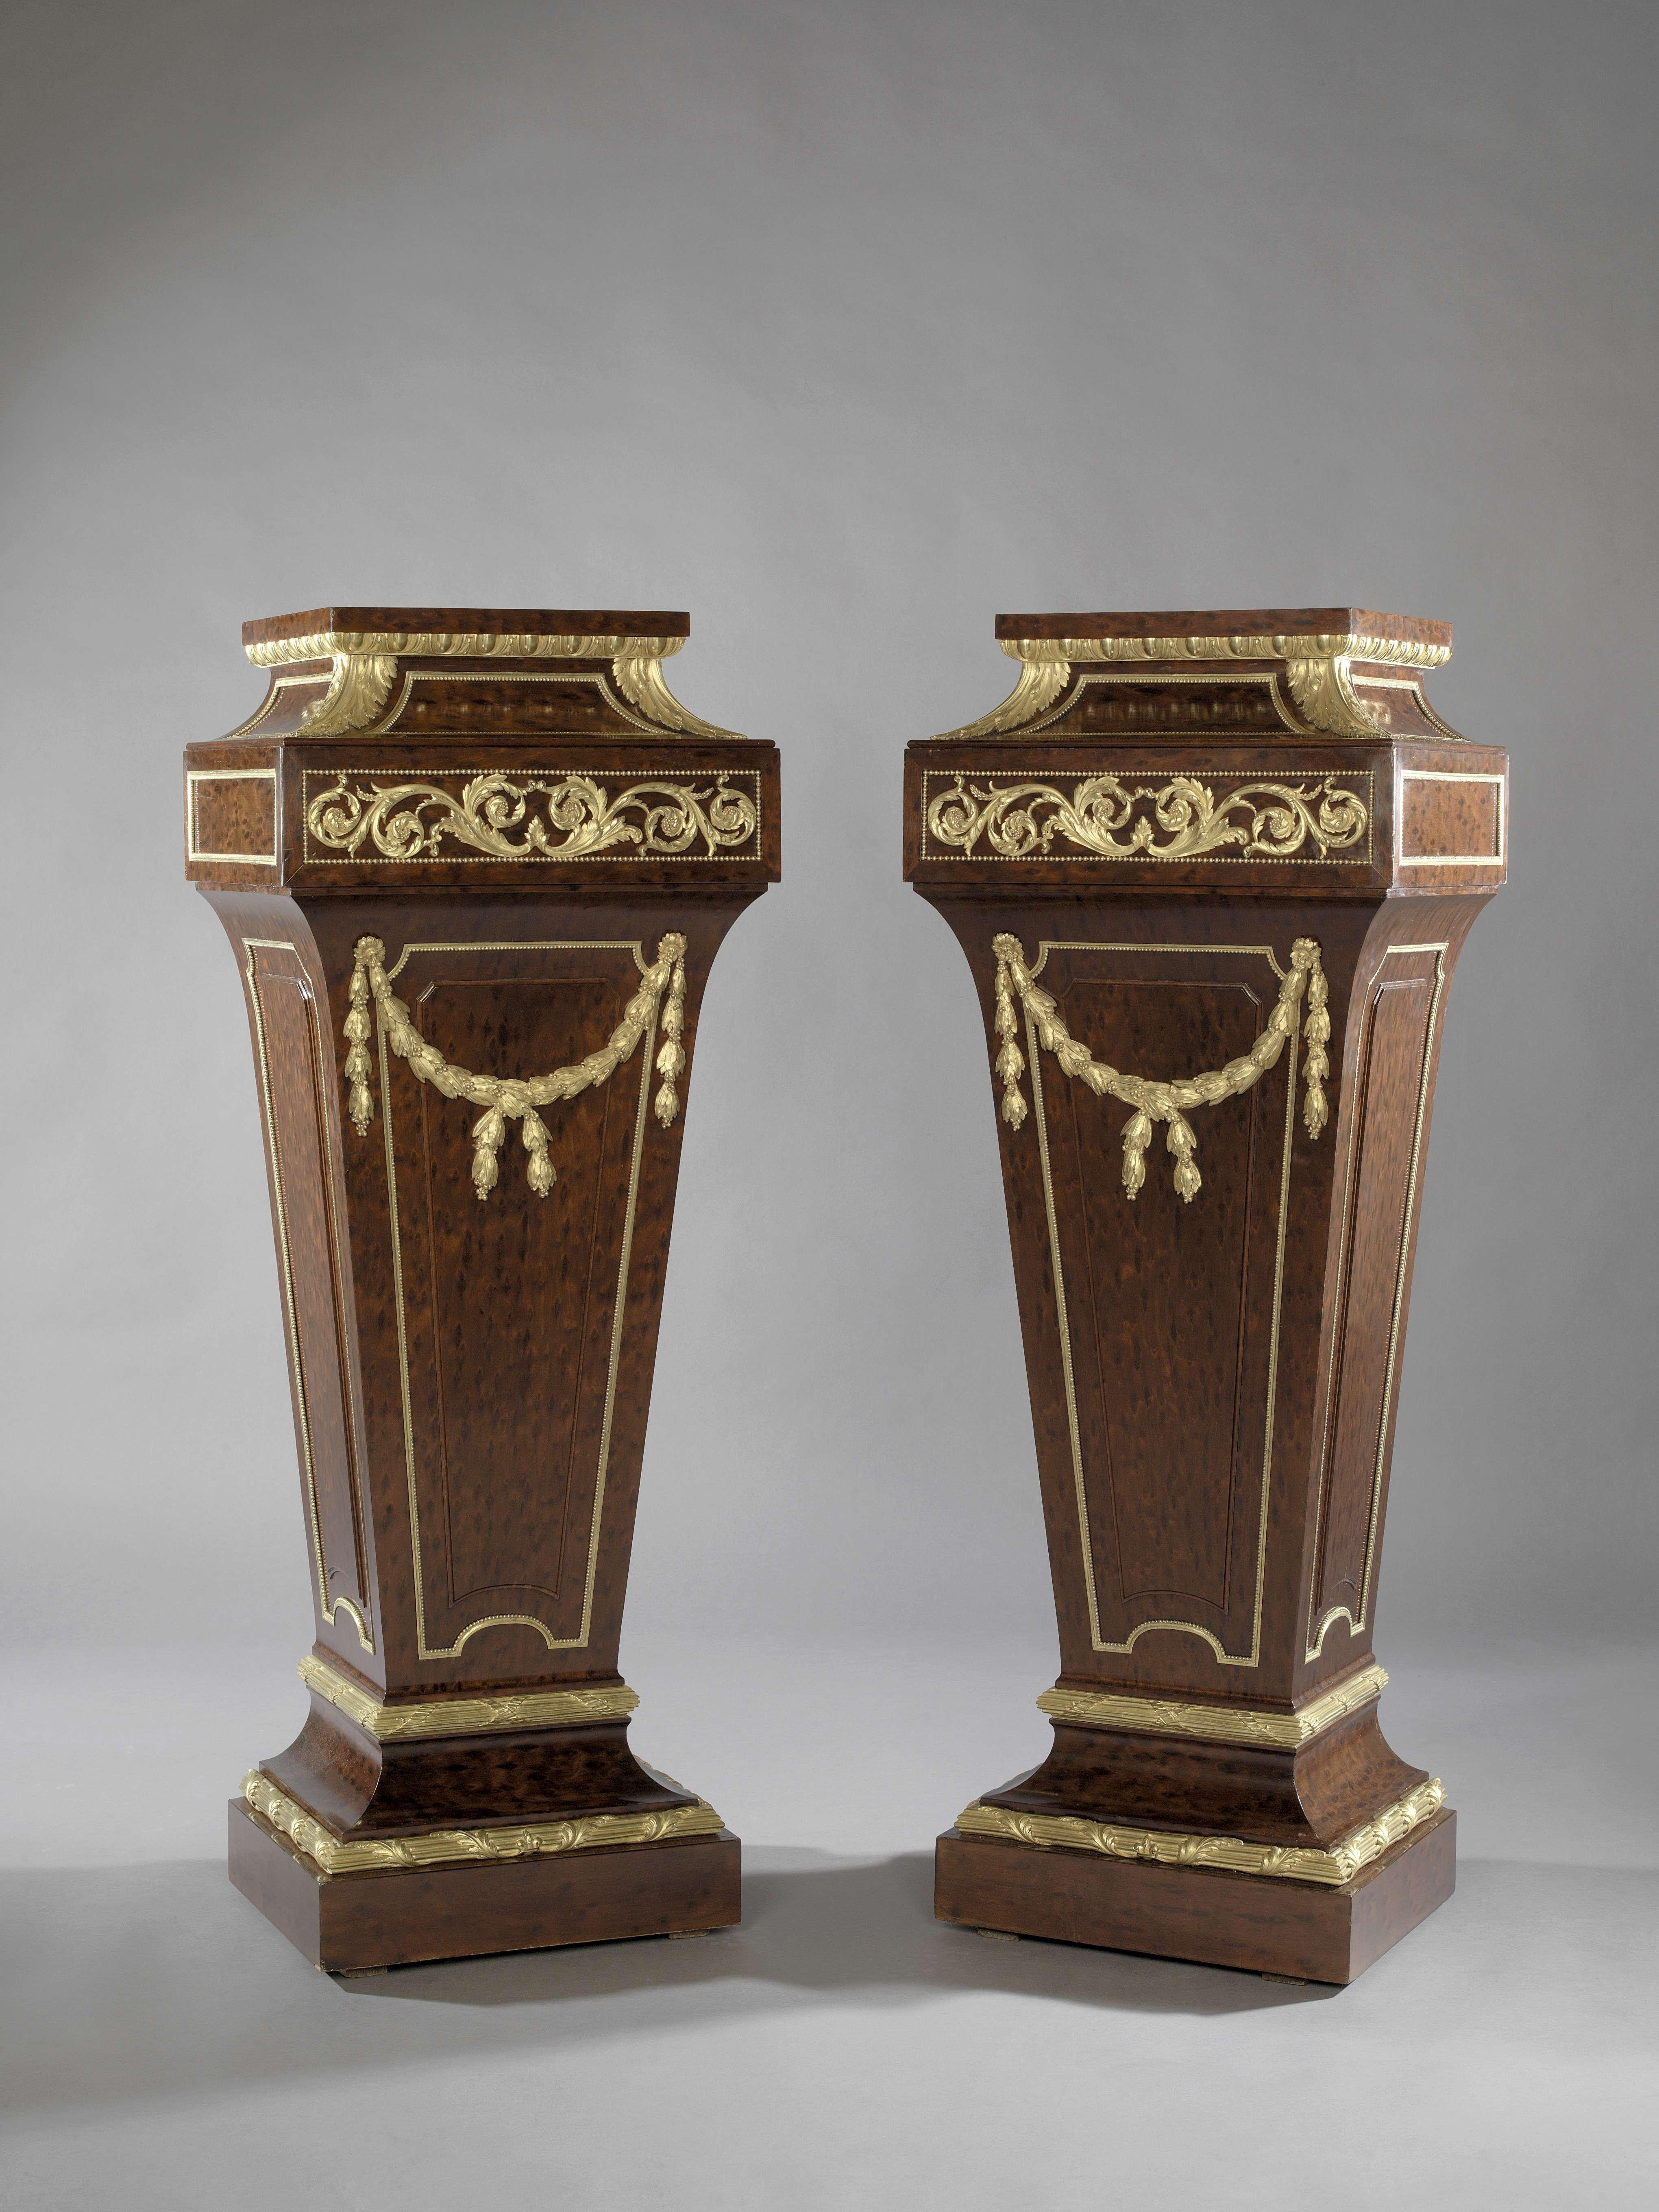 Une très belle paire de piédestaux de style Louis XVI en acajou montés sur bronze doré, attribuée à Sormani. 

Français, vers 1870.

Les piédestaux sont de forme effilée avec des montures en bronze doré finement ciselées de guirlandes de coques